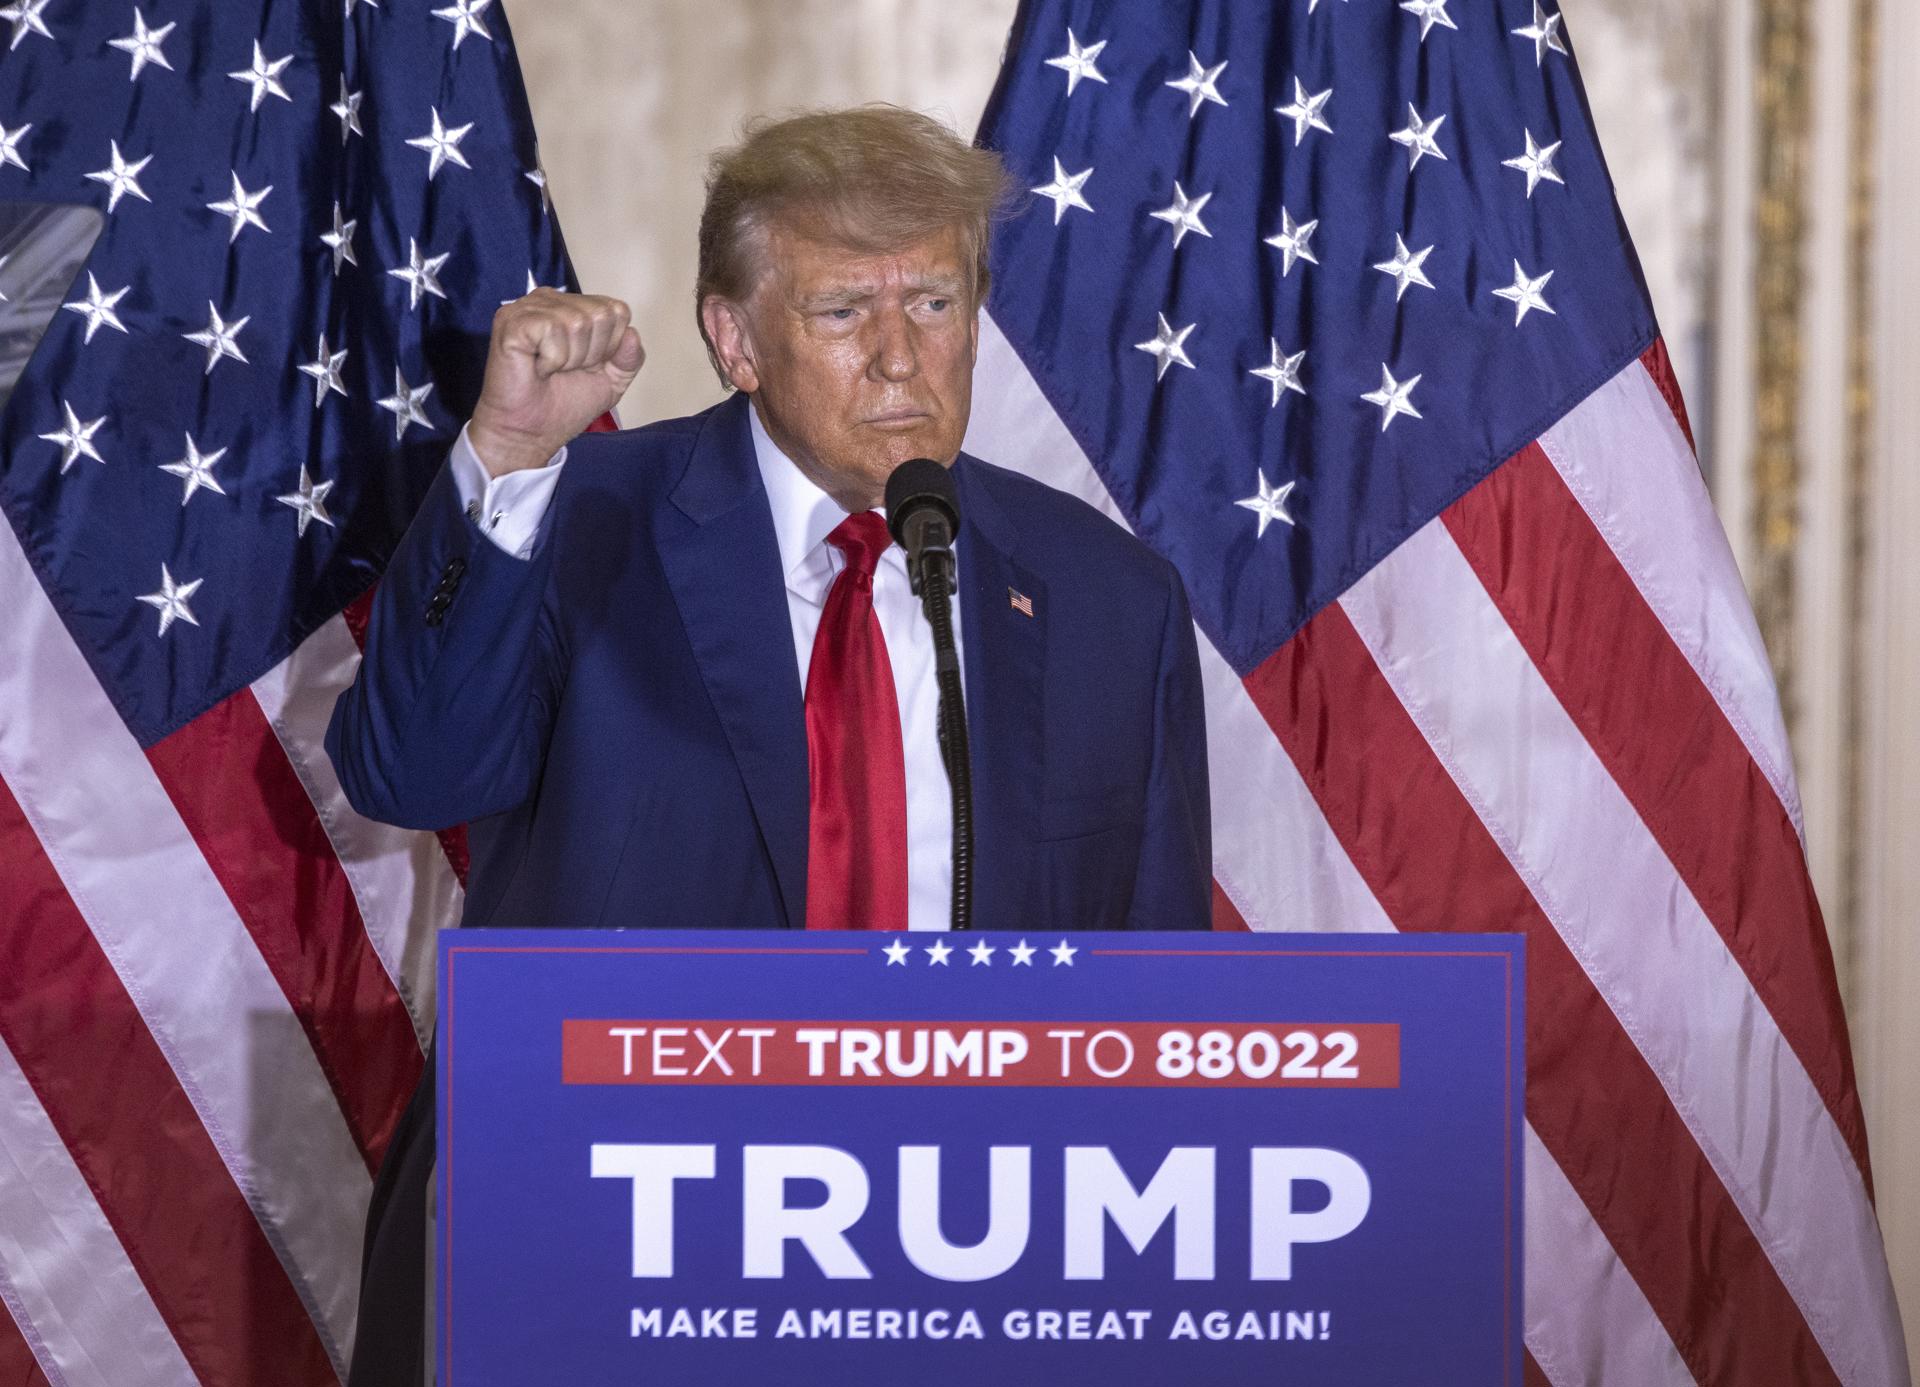 Trump responde con victimismo a la imputación: "Quieren interferir en las elecciones"